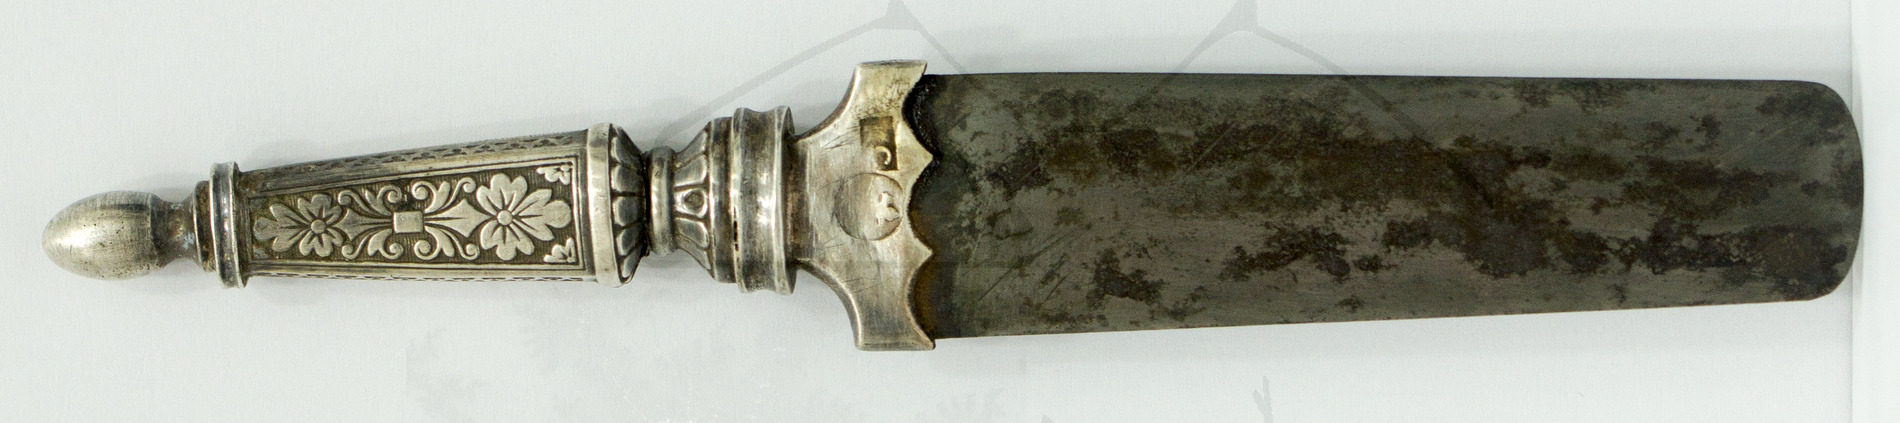 Beschneidermesser (Mohelmesser), Ansicht von hinten